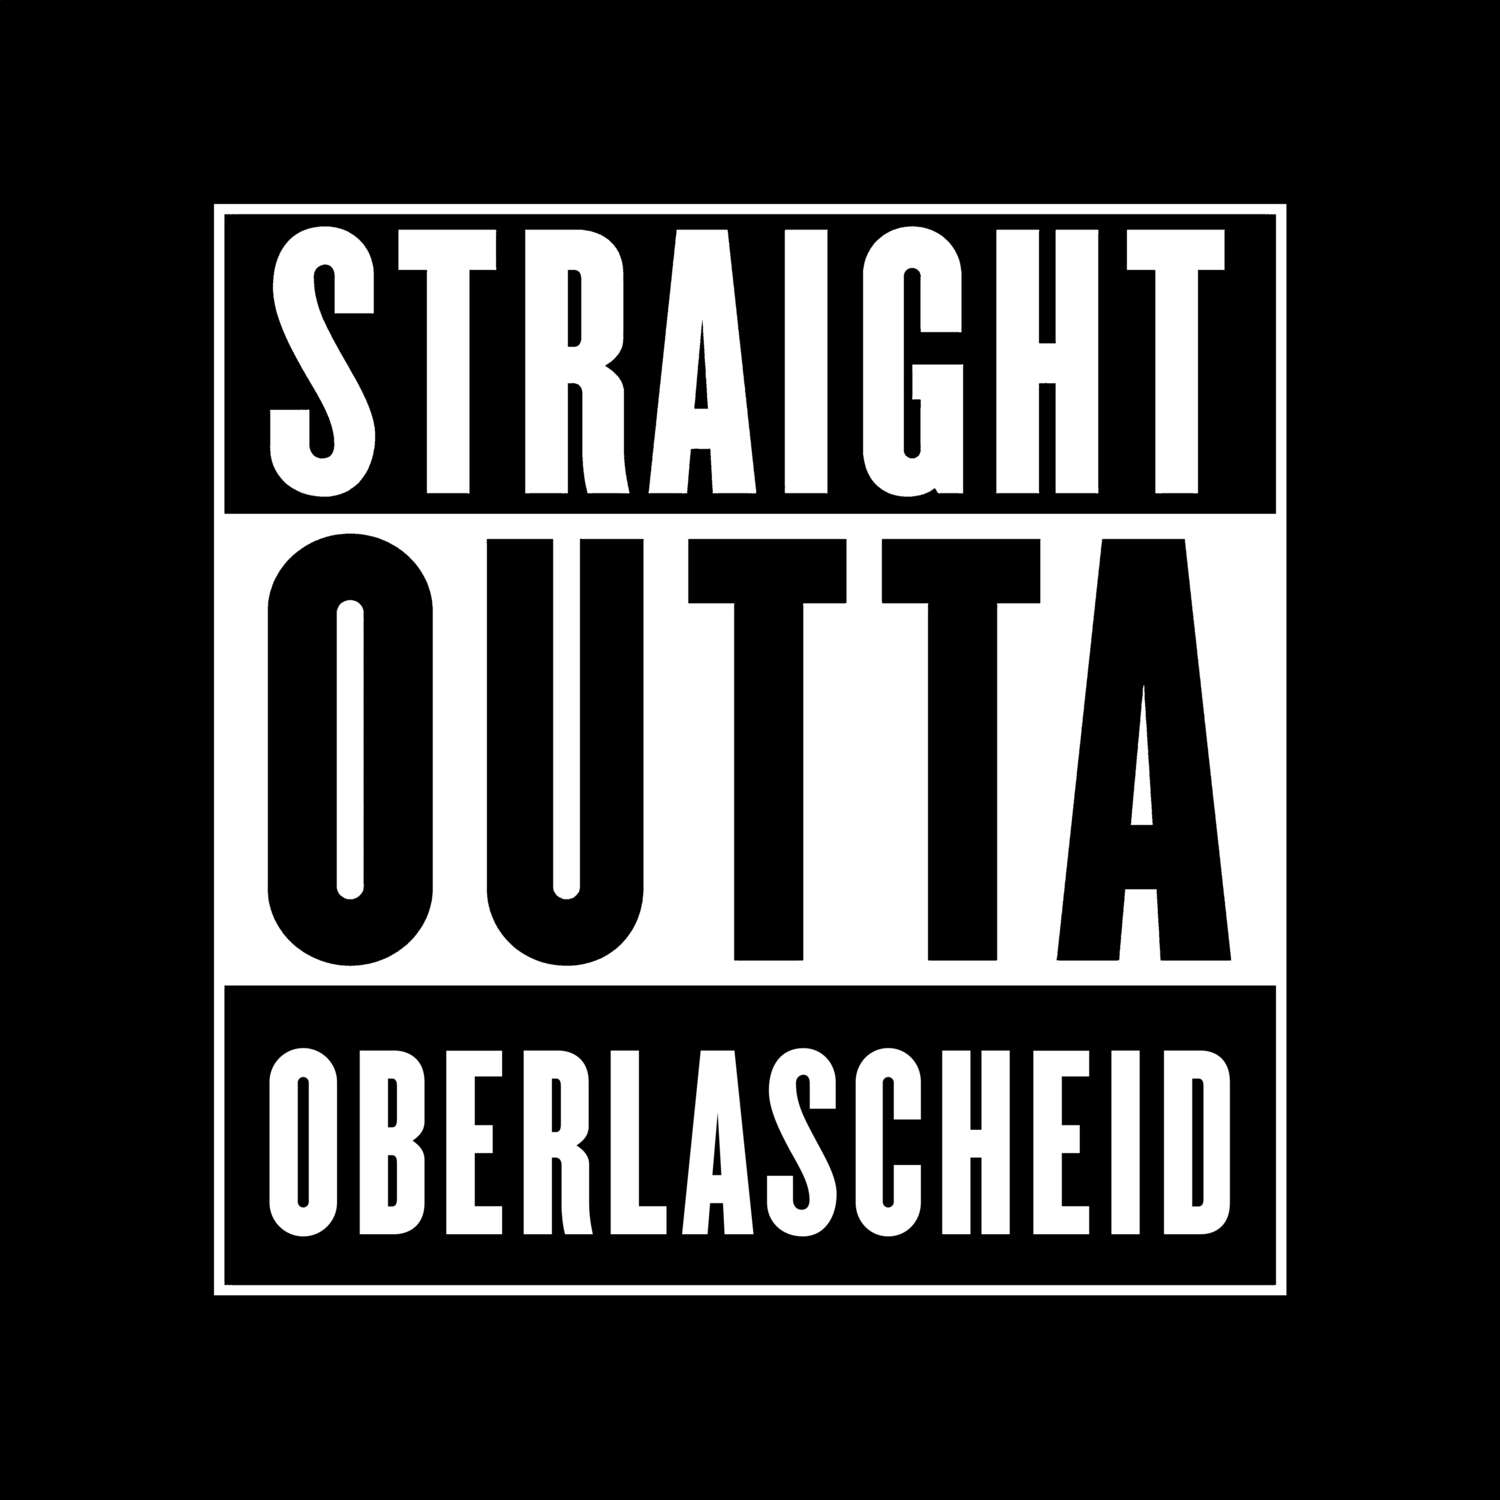 Oberlascheid T-Shirt »Straight Outta«